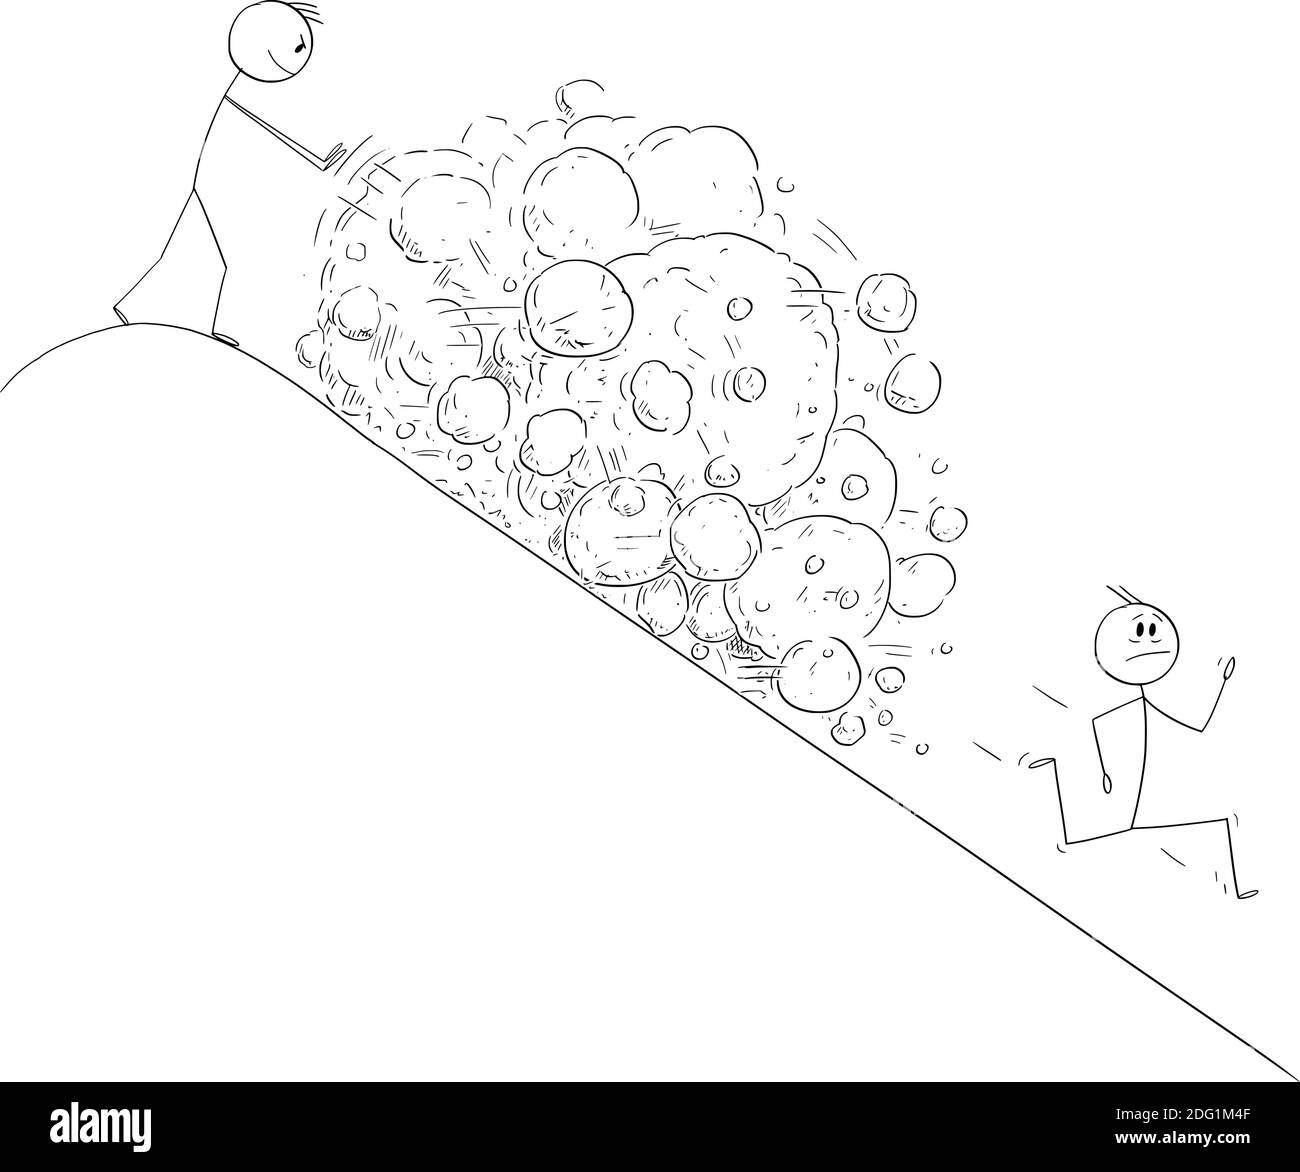 Vettore cartoon figura bastone illustrazione di uomo in cima alla collina che crea valanga di rocce che cadono su concorrente corrente o nemico. Illustrazione Vettoriale